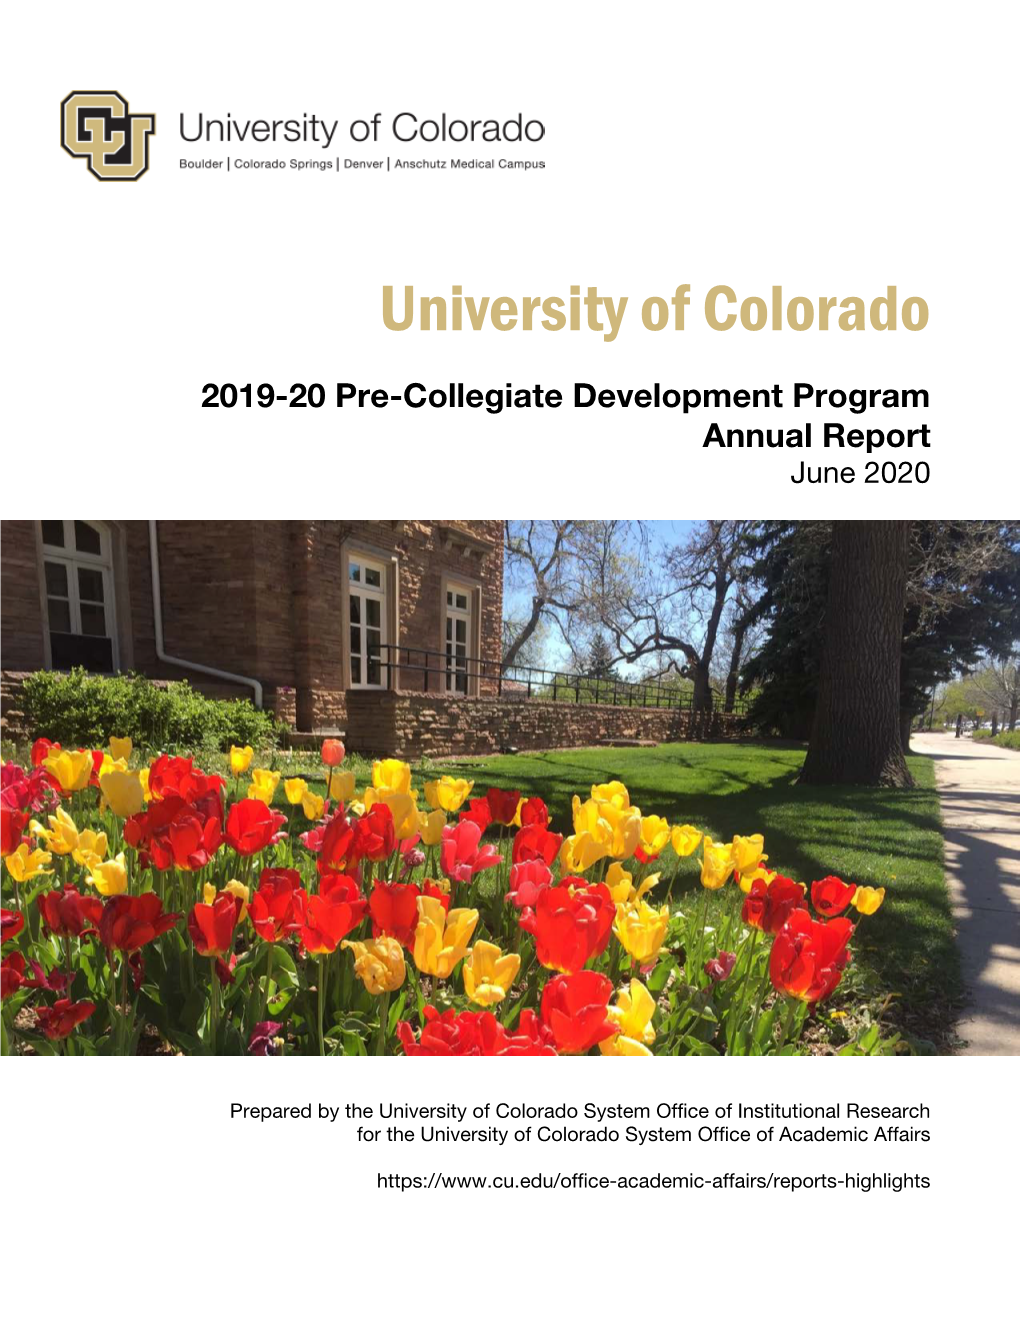 Pre-Collegiate Development Program Report